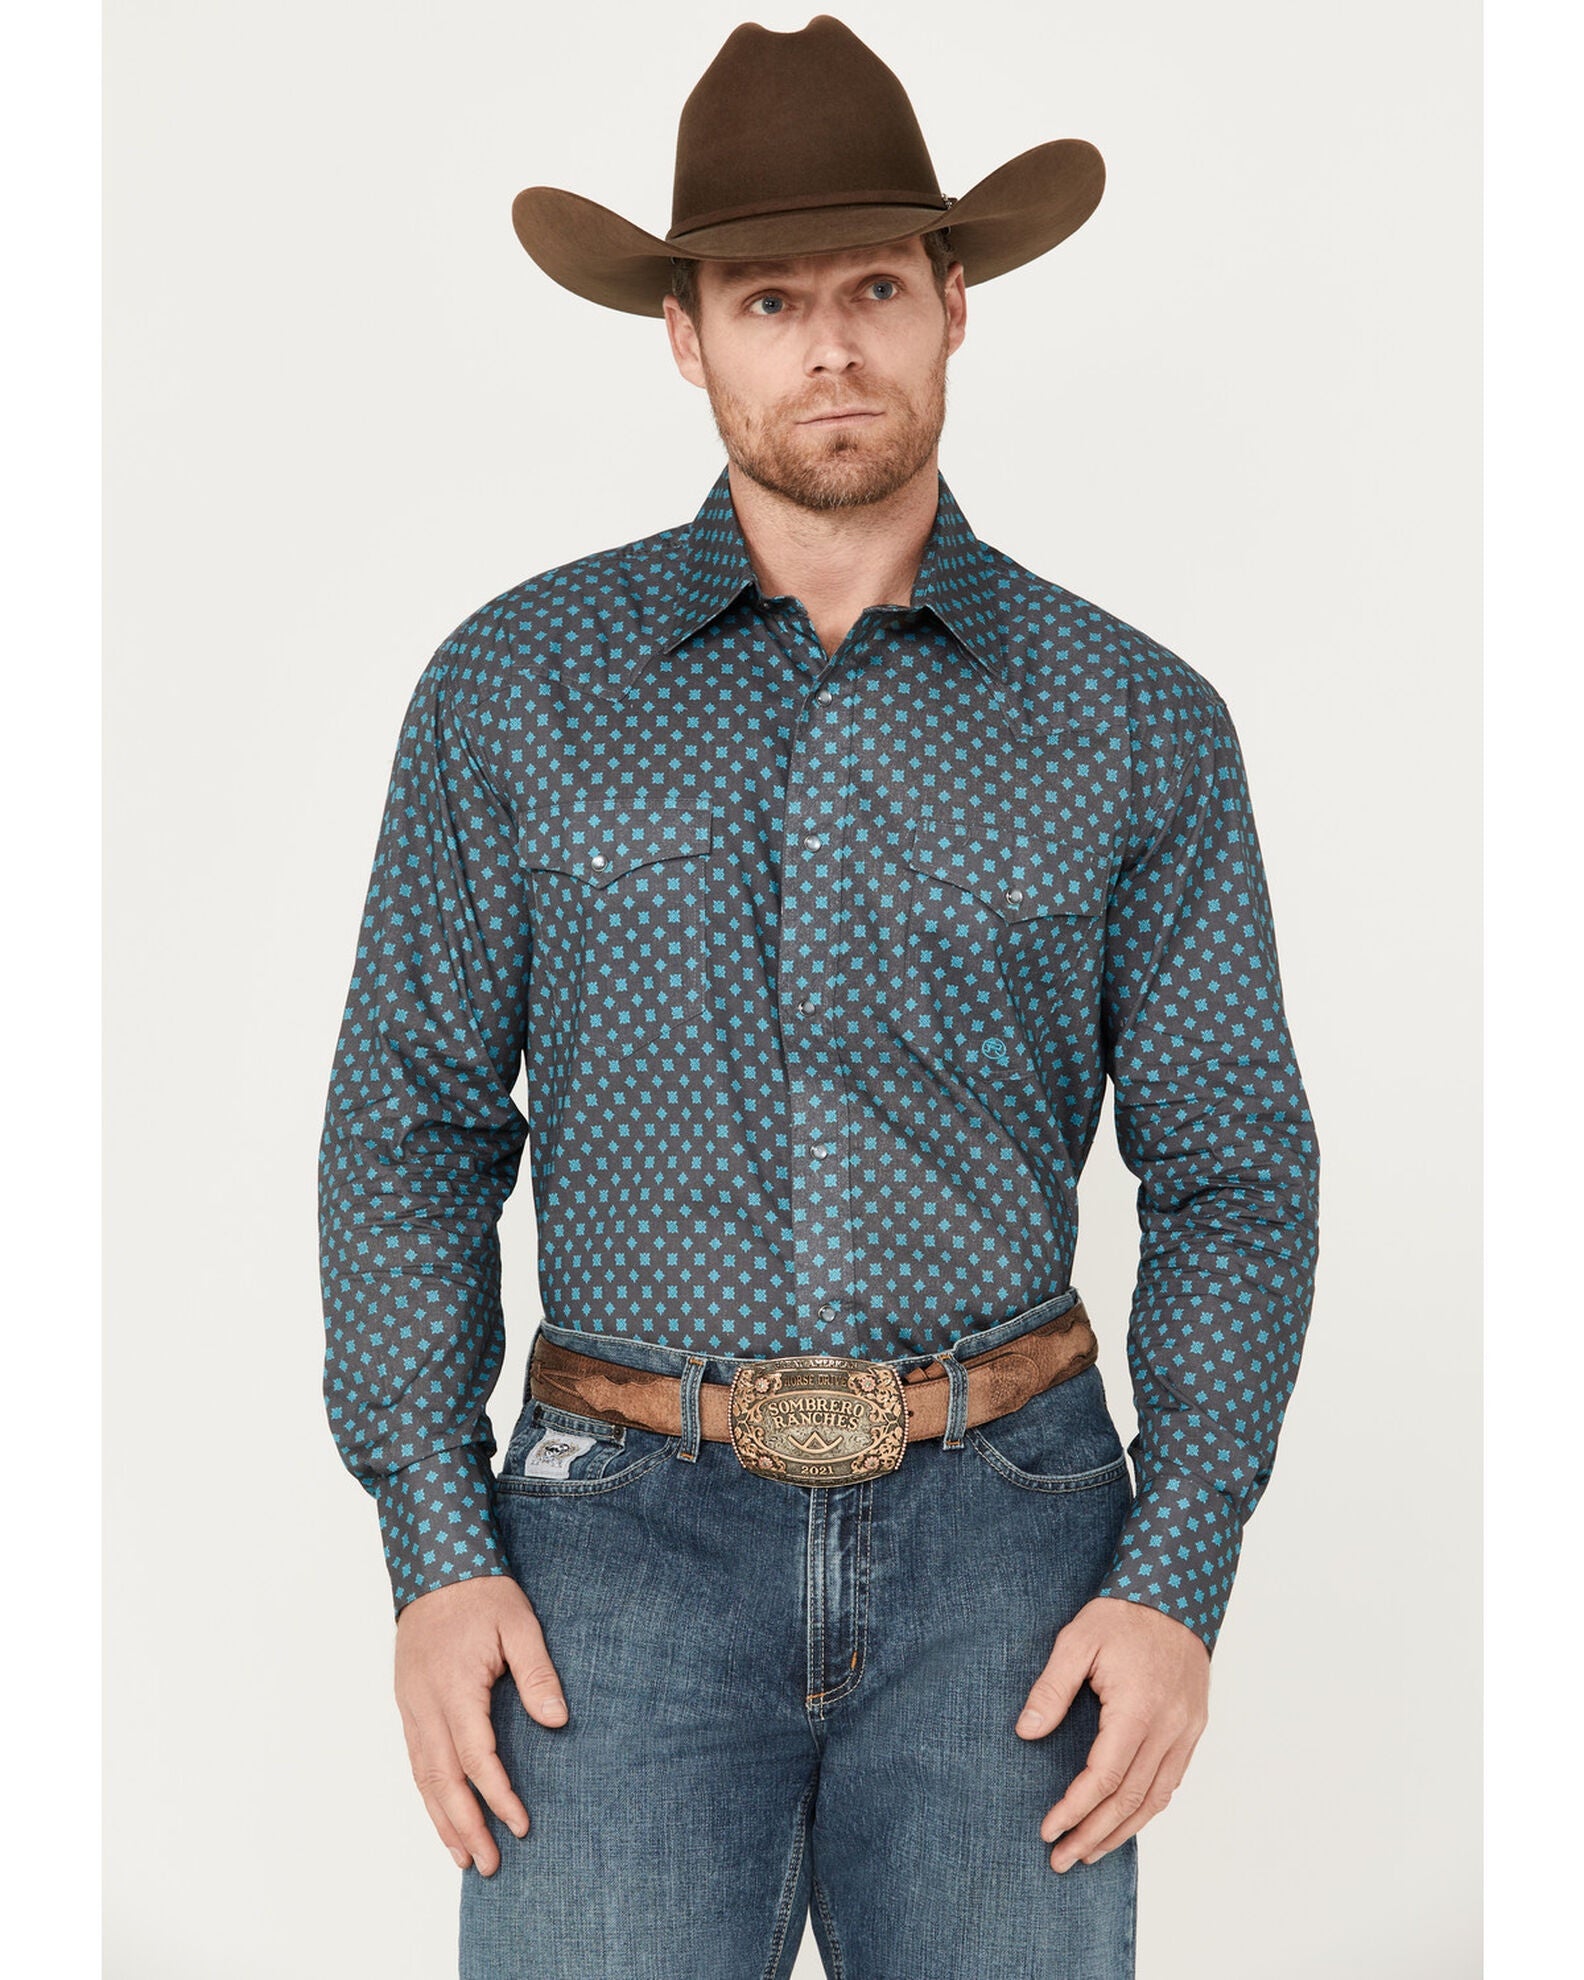 Mens Roper Amarillo Shirt - Charcoal with Aqua Print (6962153095245)